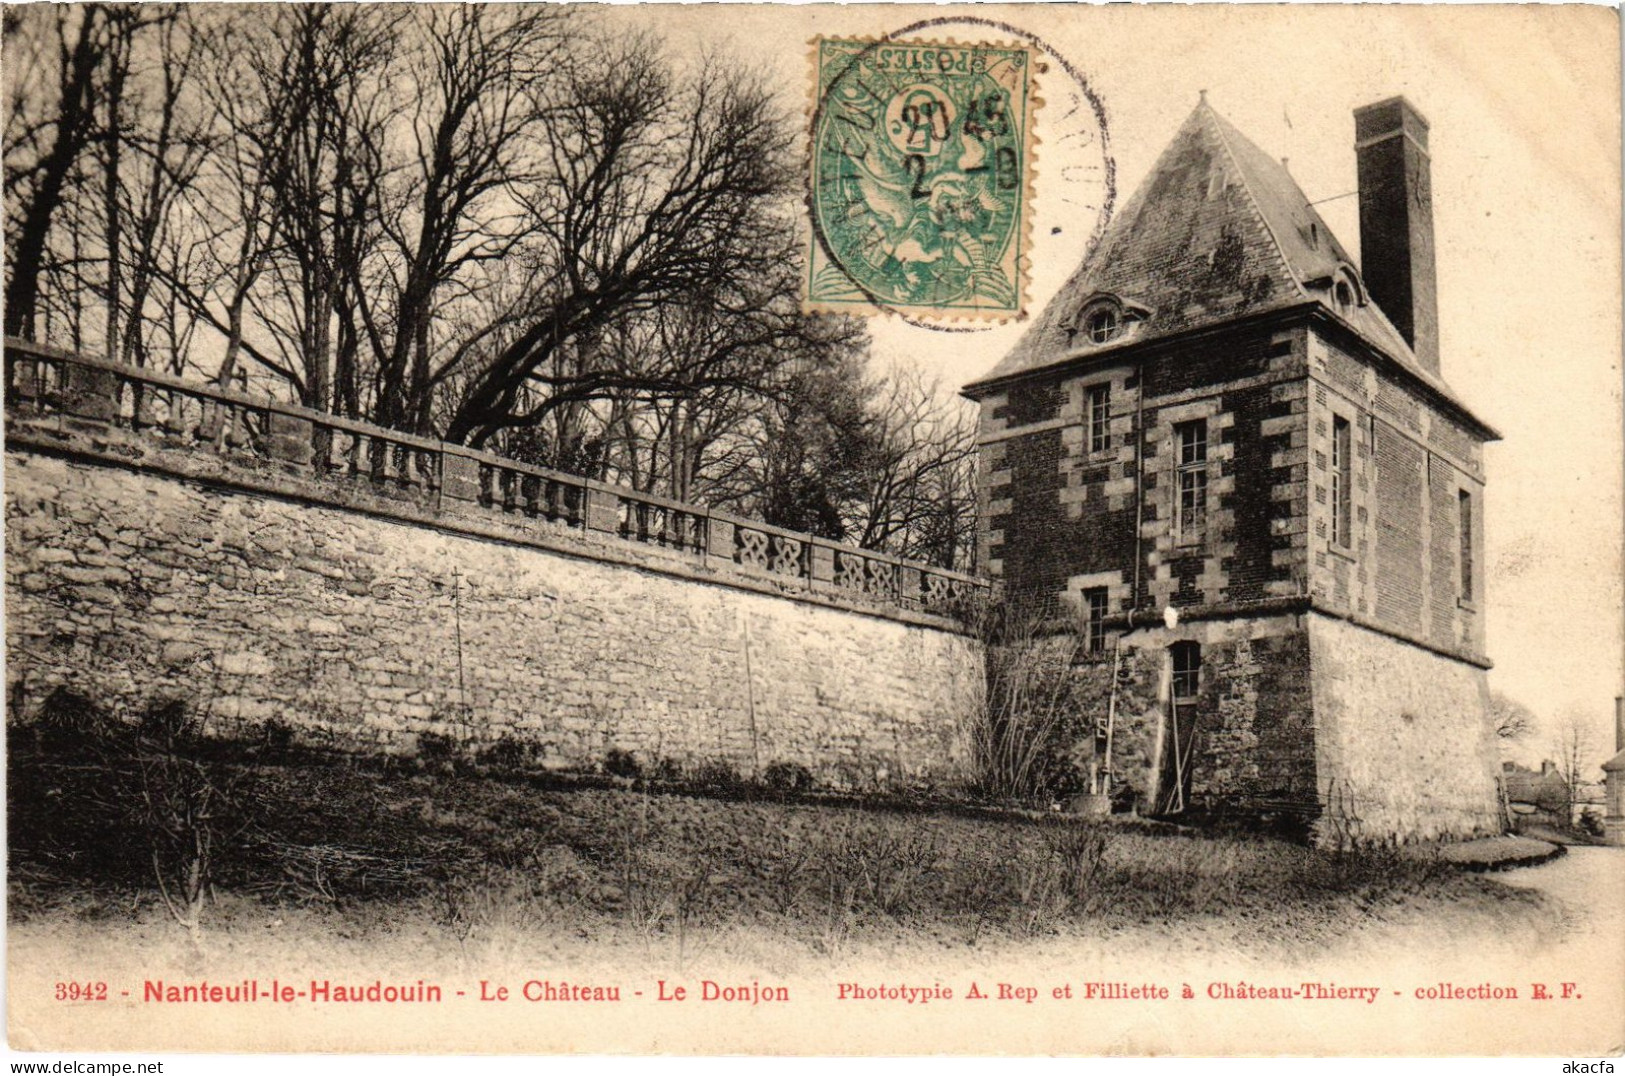 CPA Nanteuil-le-Hadouin Le Chateau Donjon (1187435) - Nanteuil-le-Haudouin